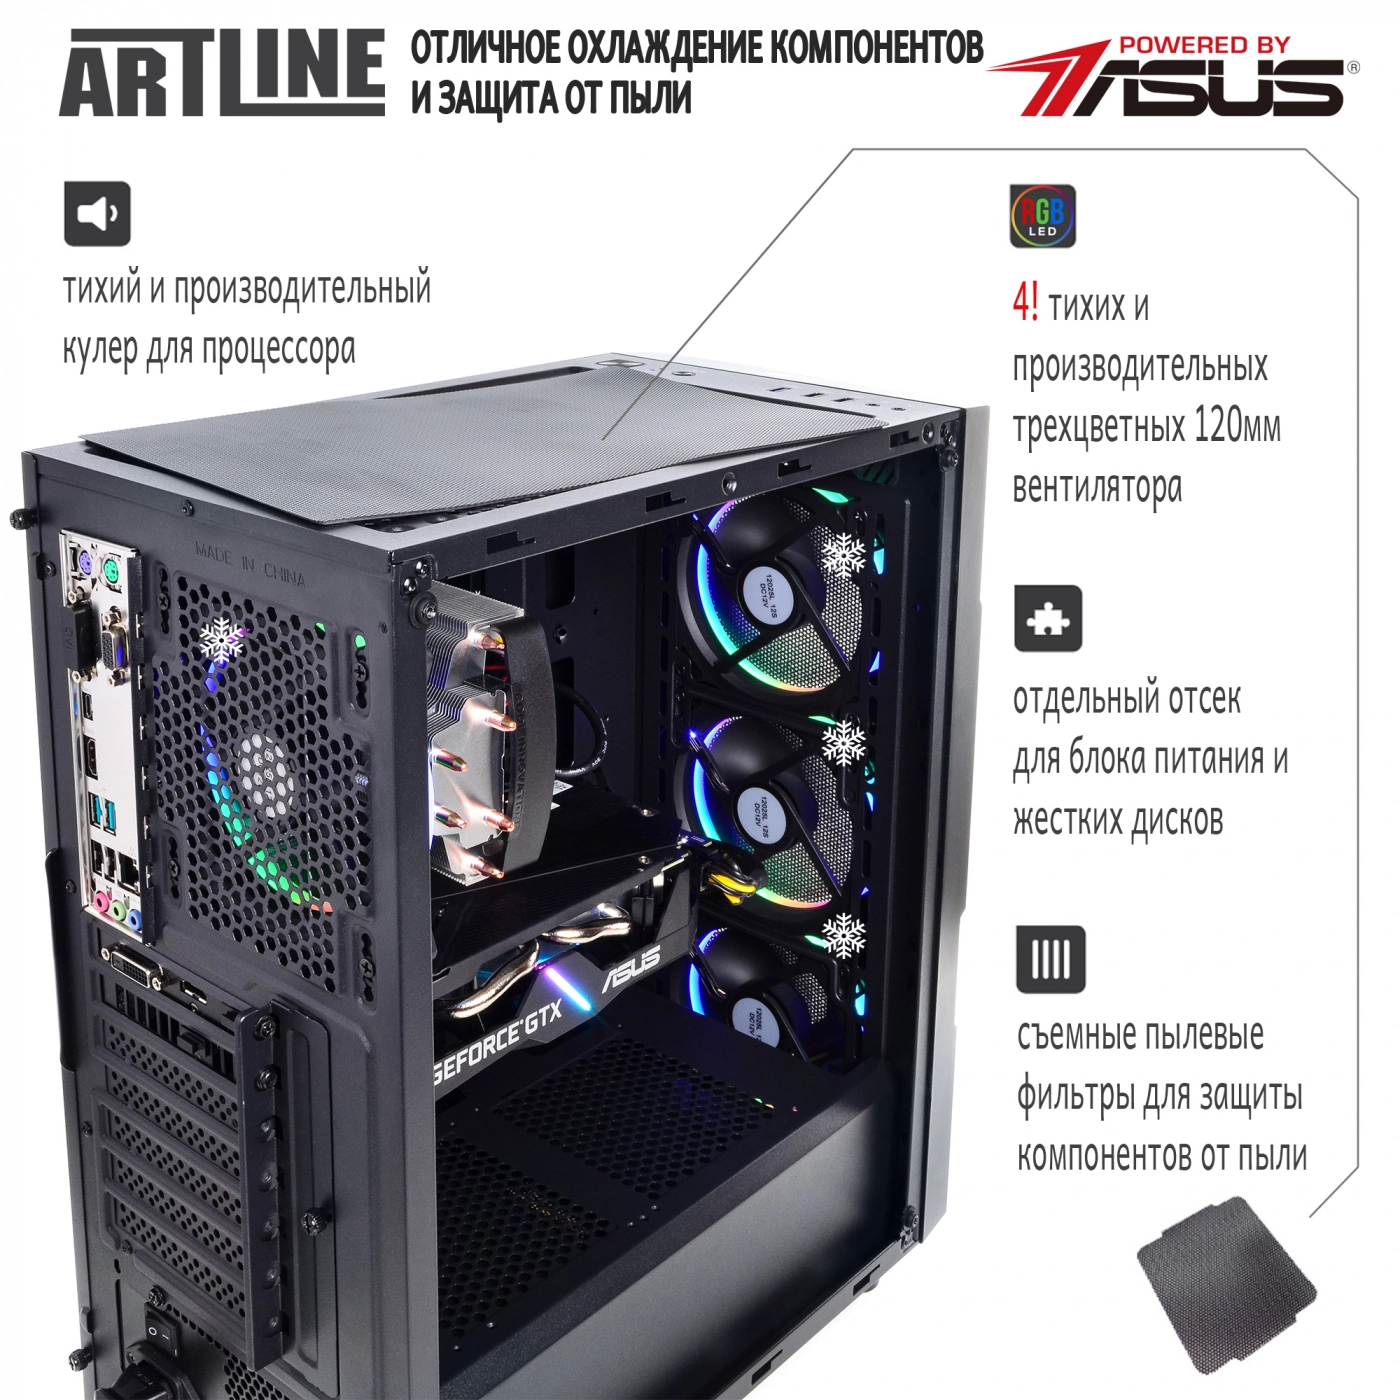 Купить Компьютер ARTLINE Gaming X47v37 - фото 2